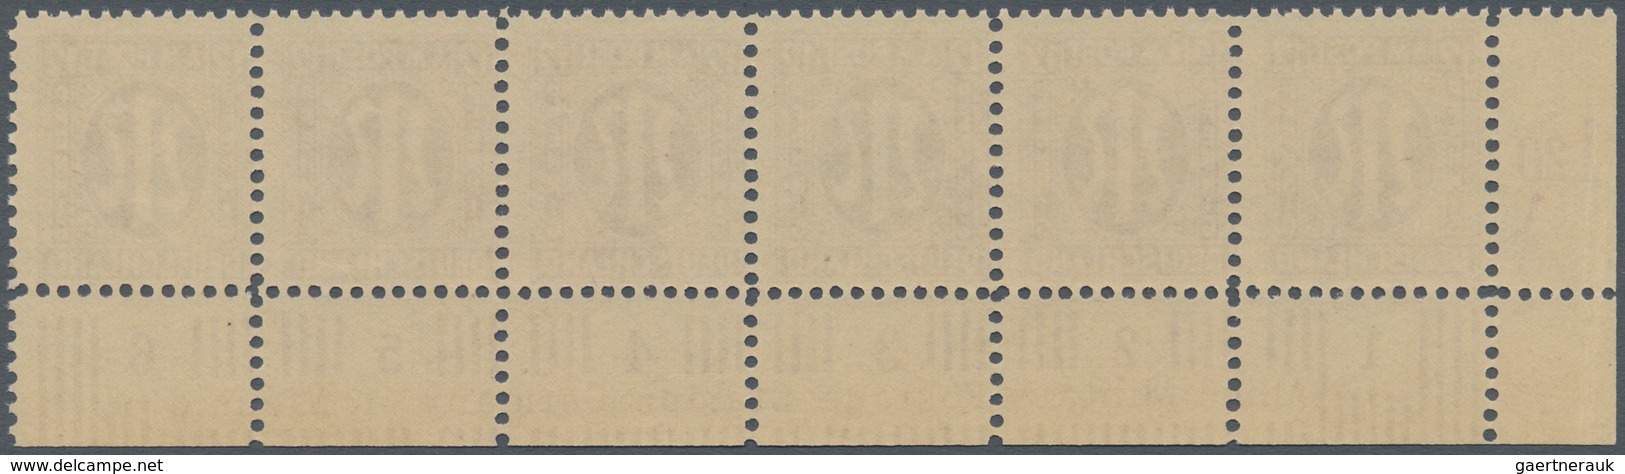 Bizone: 1945, AM-Post Deutscher Druck, Probedrucke auf Papier x (Farbe im UV-Licht abweichend) gez.